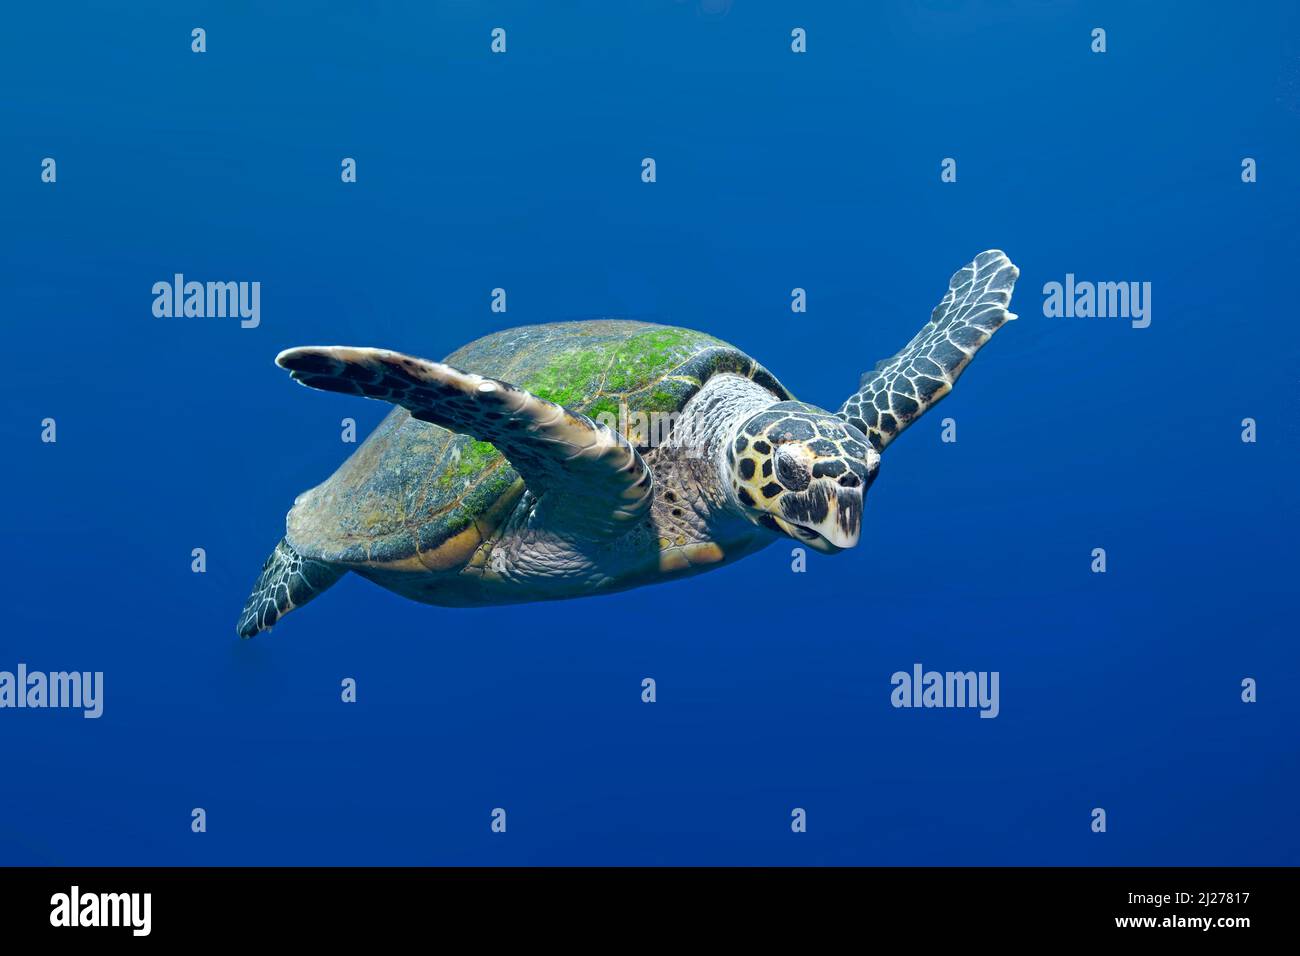 Karettschildkröte (Eretmochelys imbricata) Schwimmen im blauen Wasser, Marsa Alam, Ägypten Stockfoto